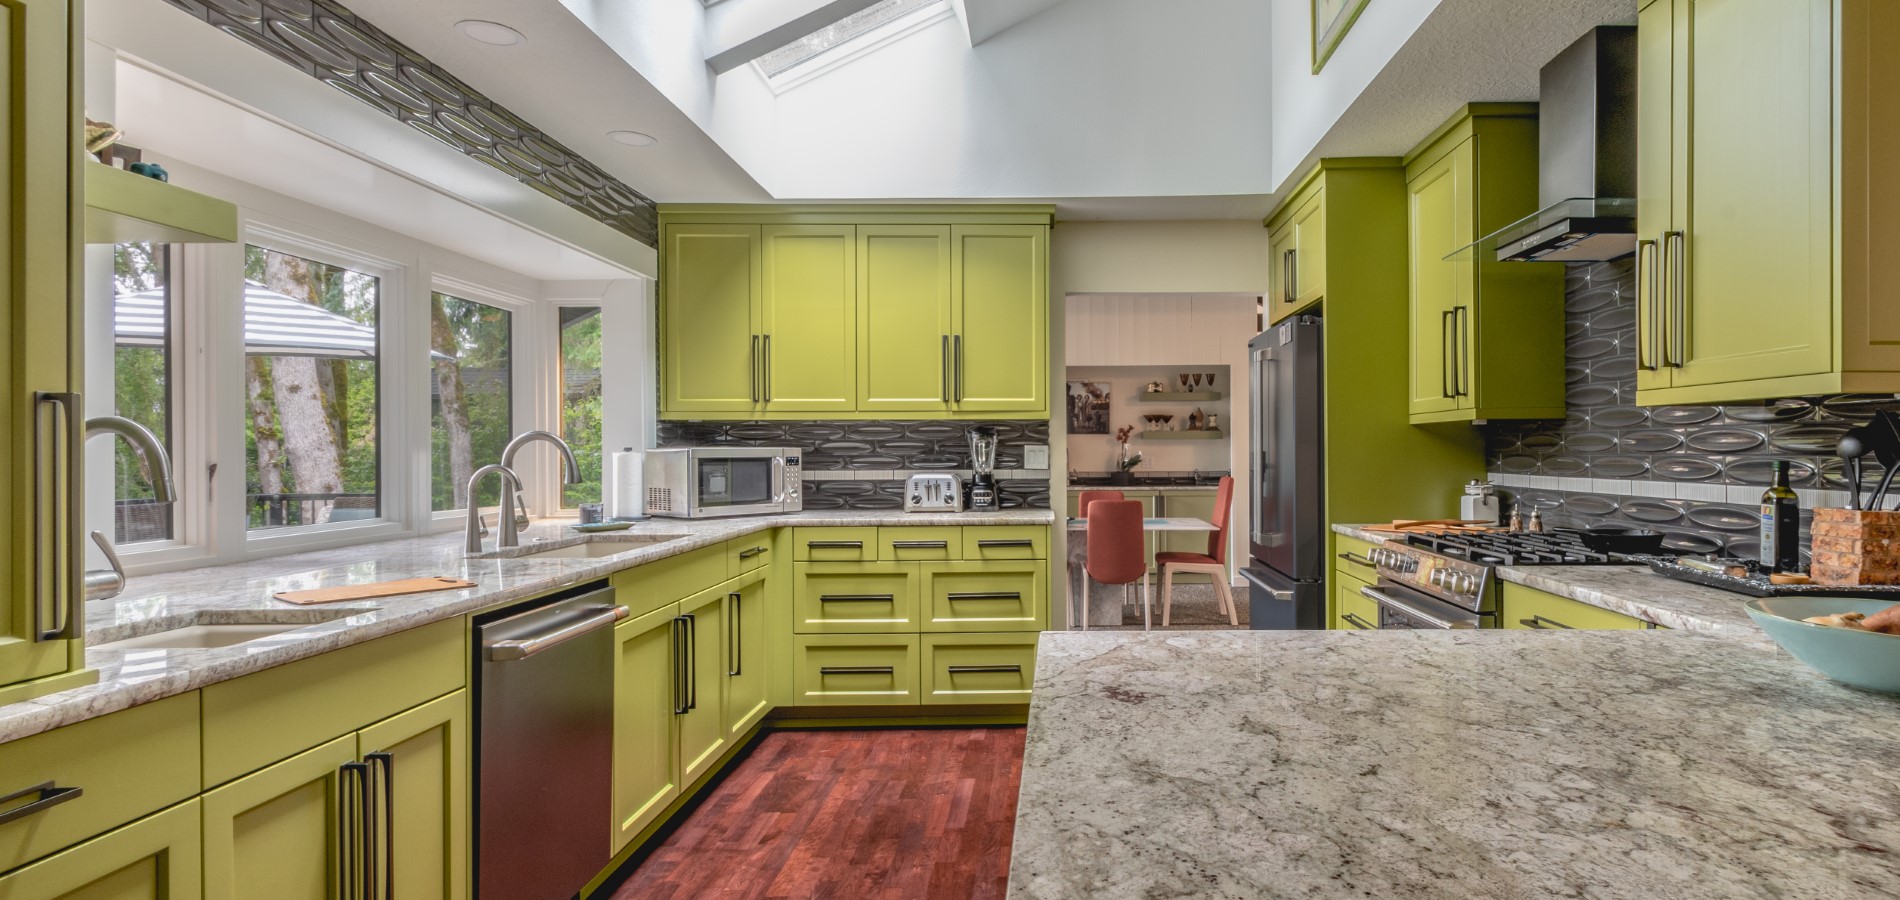 Vibrant green cabinets, kitchen and whole home remodel, Golden Rule Remodeling & Design, Salem Oregon 